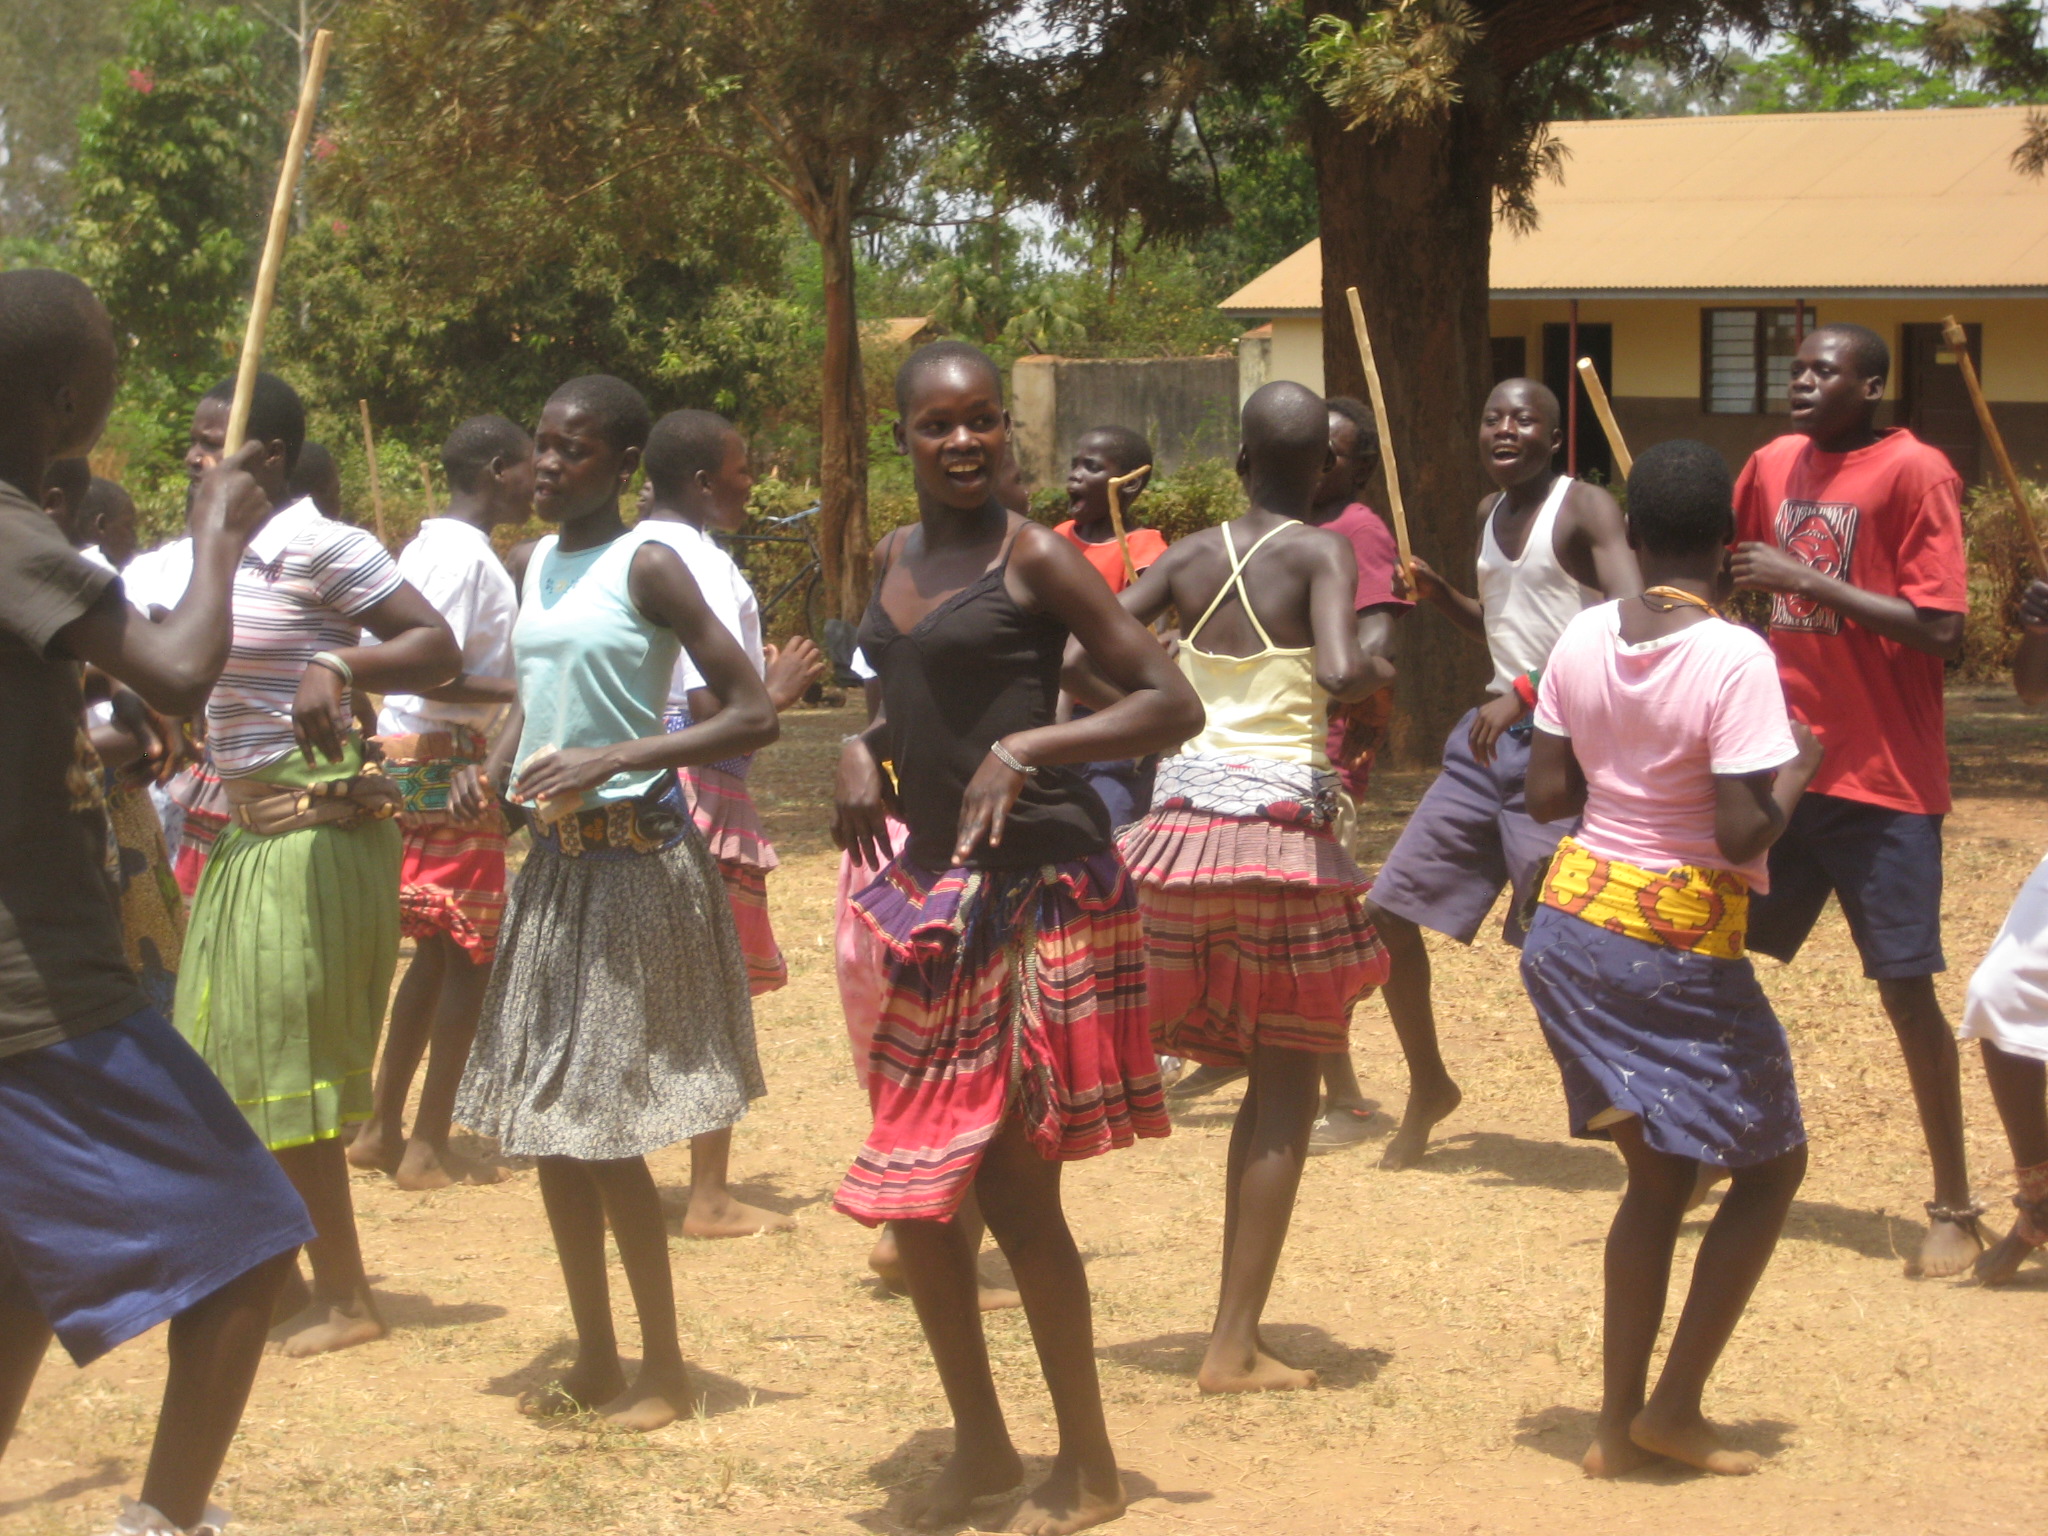  Find Whores in Kitgum,Uganda